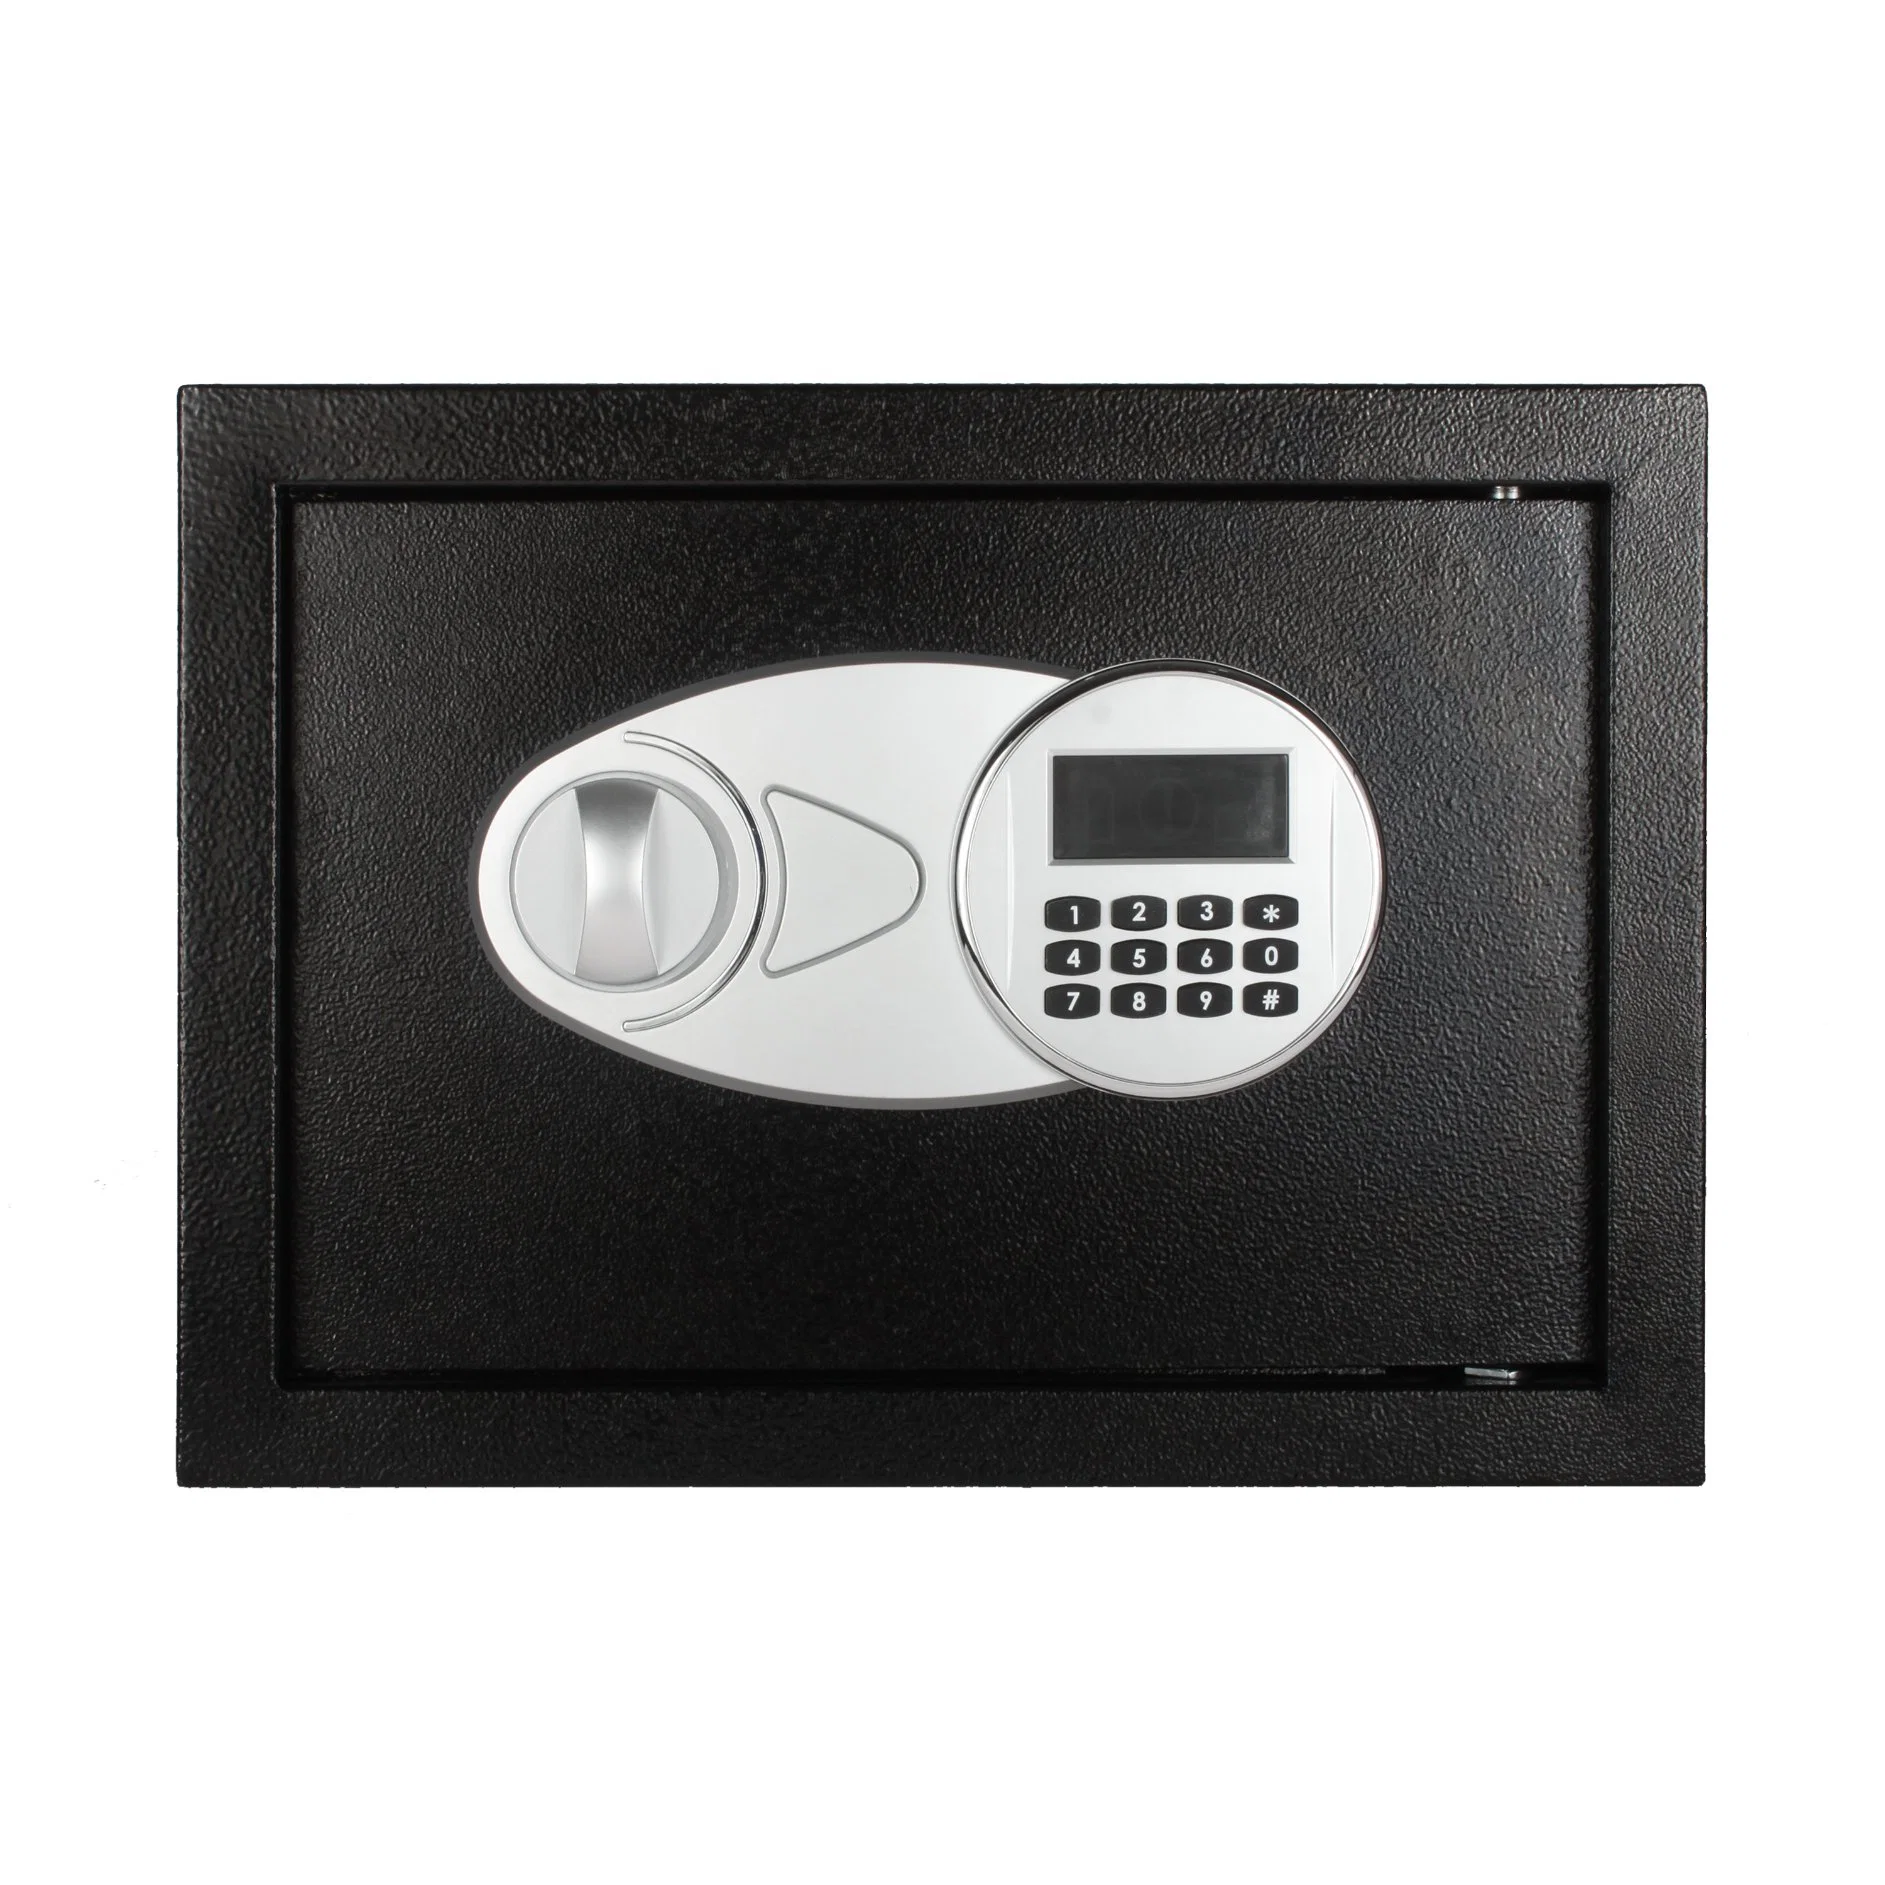 Caja de seguridad electrónica mini para el hogar, muebles de oficina en la pared, caja fuerte grande digital para habitaciones, seguridad para portátiles, cajas fuertes pequeñas y secretas con diseño oculto y cerradura digital.